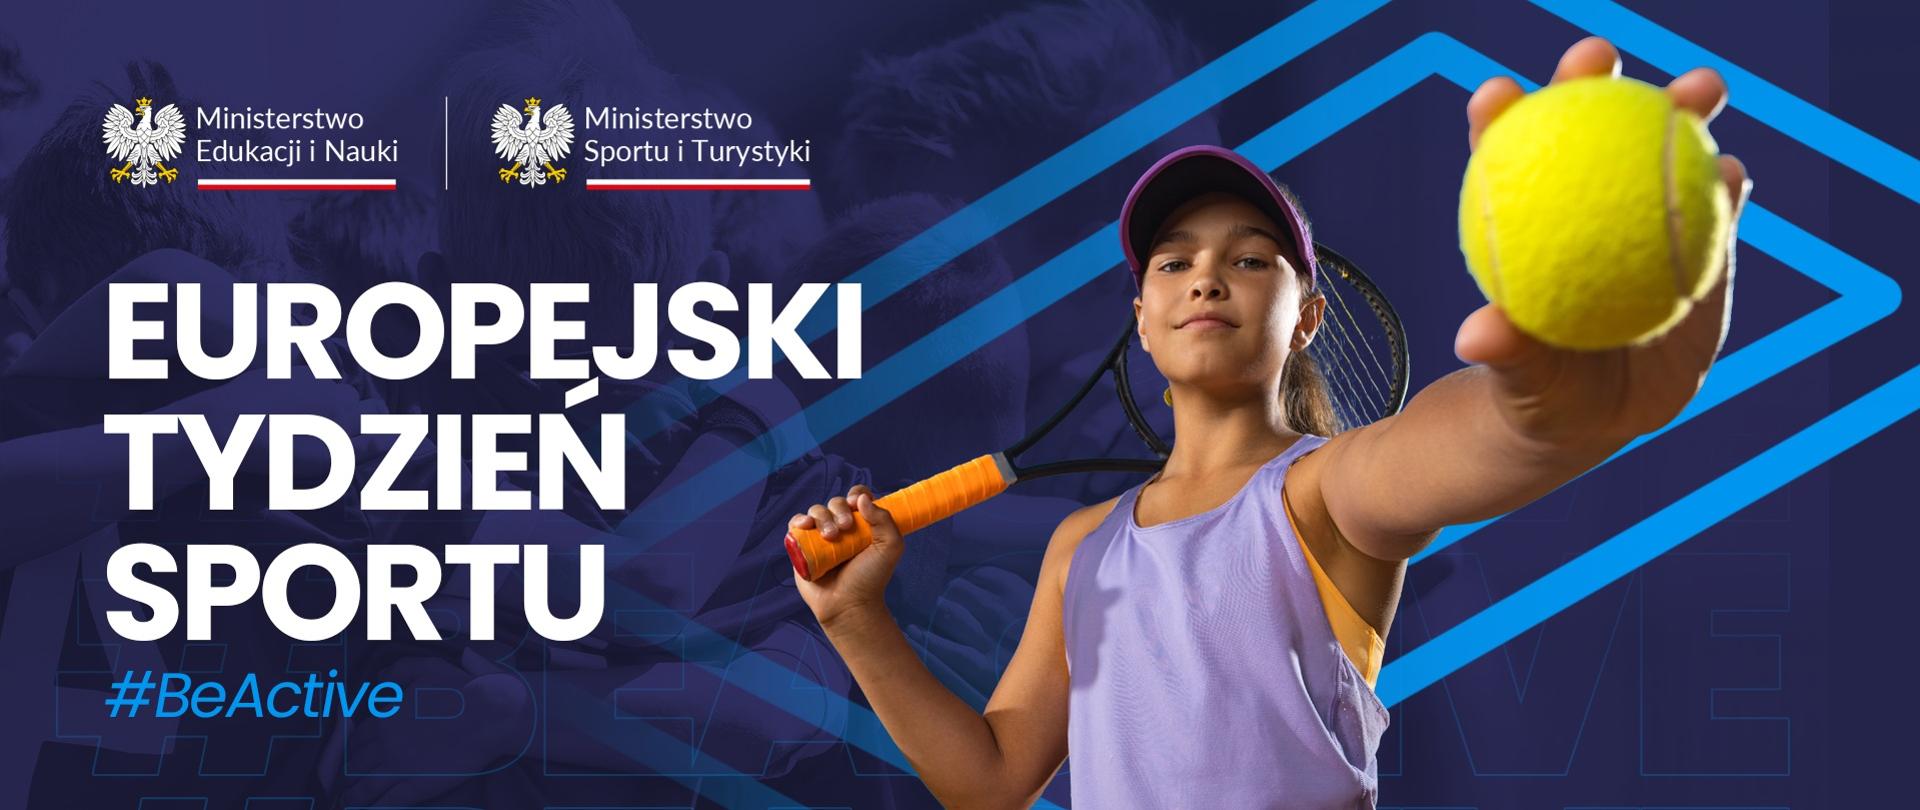 Młoda dziewczyna z tenisową rakietą z jednej ręce, a piłeczką w drugiej, obok napis Europejski Tydzień Sportu.